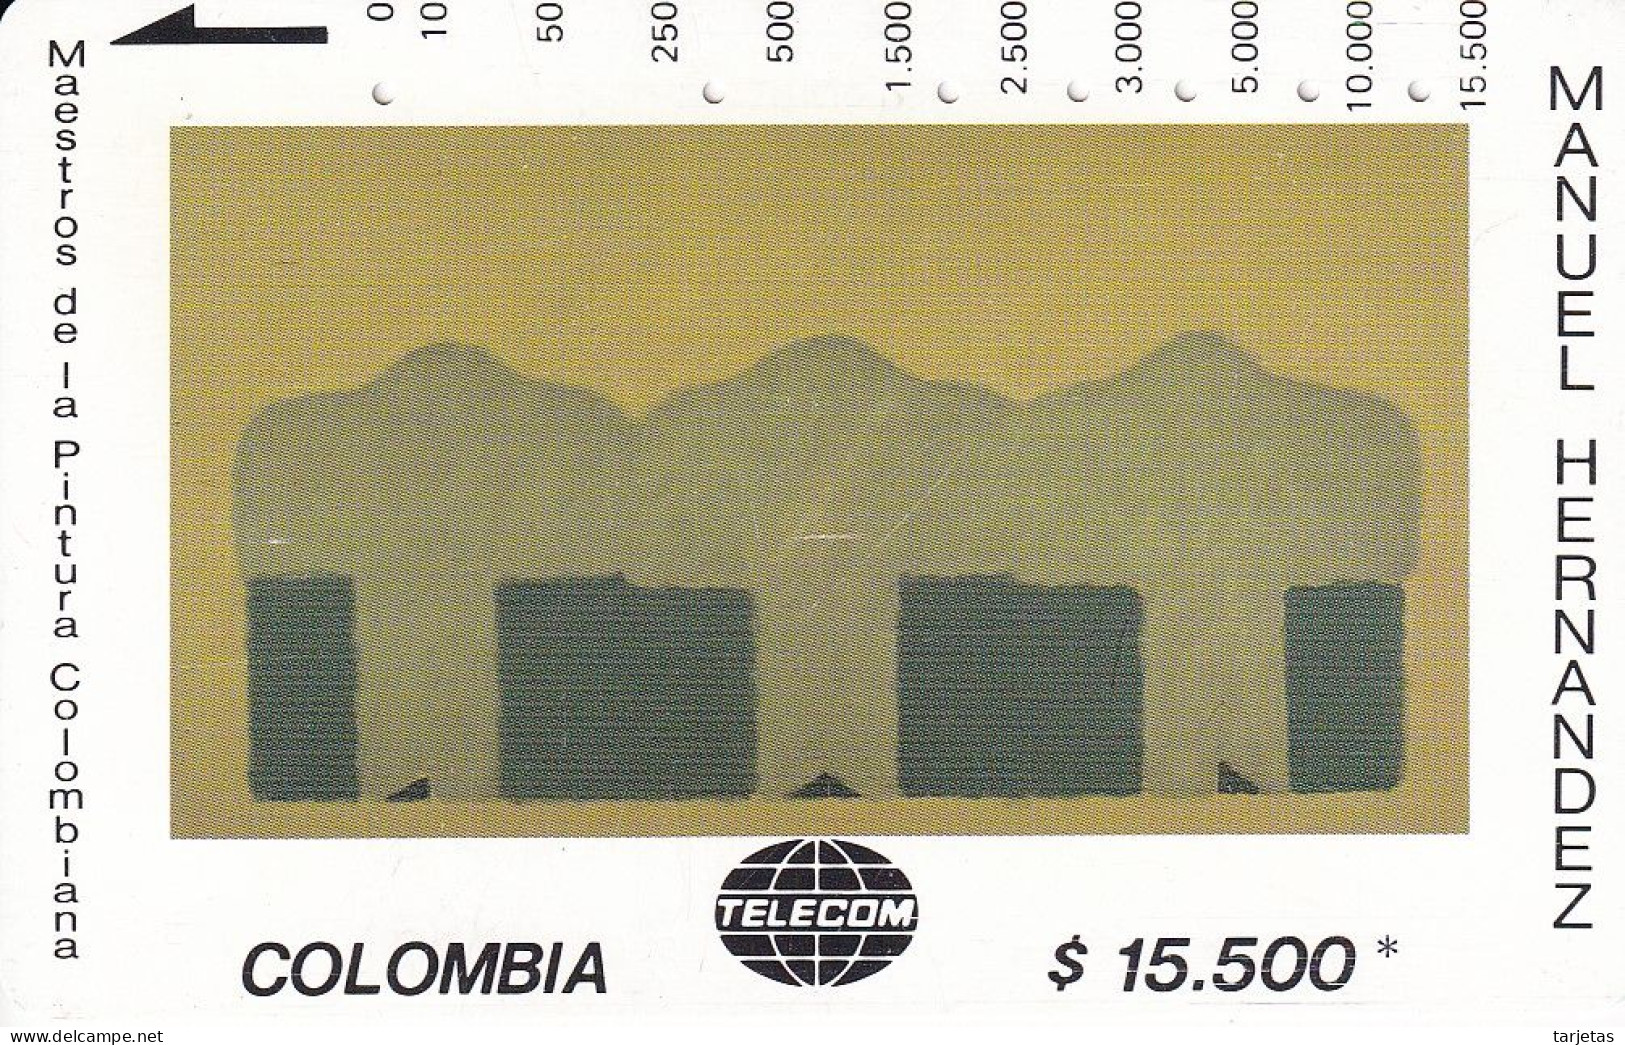 TARJETA DE COLOMBIA DE TELECOM DE $15500 MAESTROS DE LA PINTURA (MANUEL HERNANDEZ) SECUENCIA ALINEADA - Kolumbien